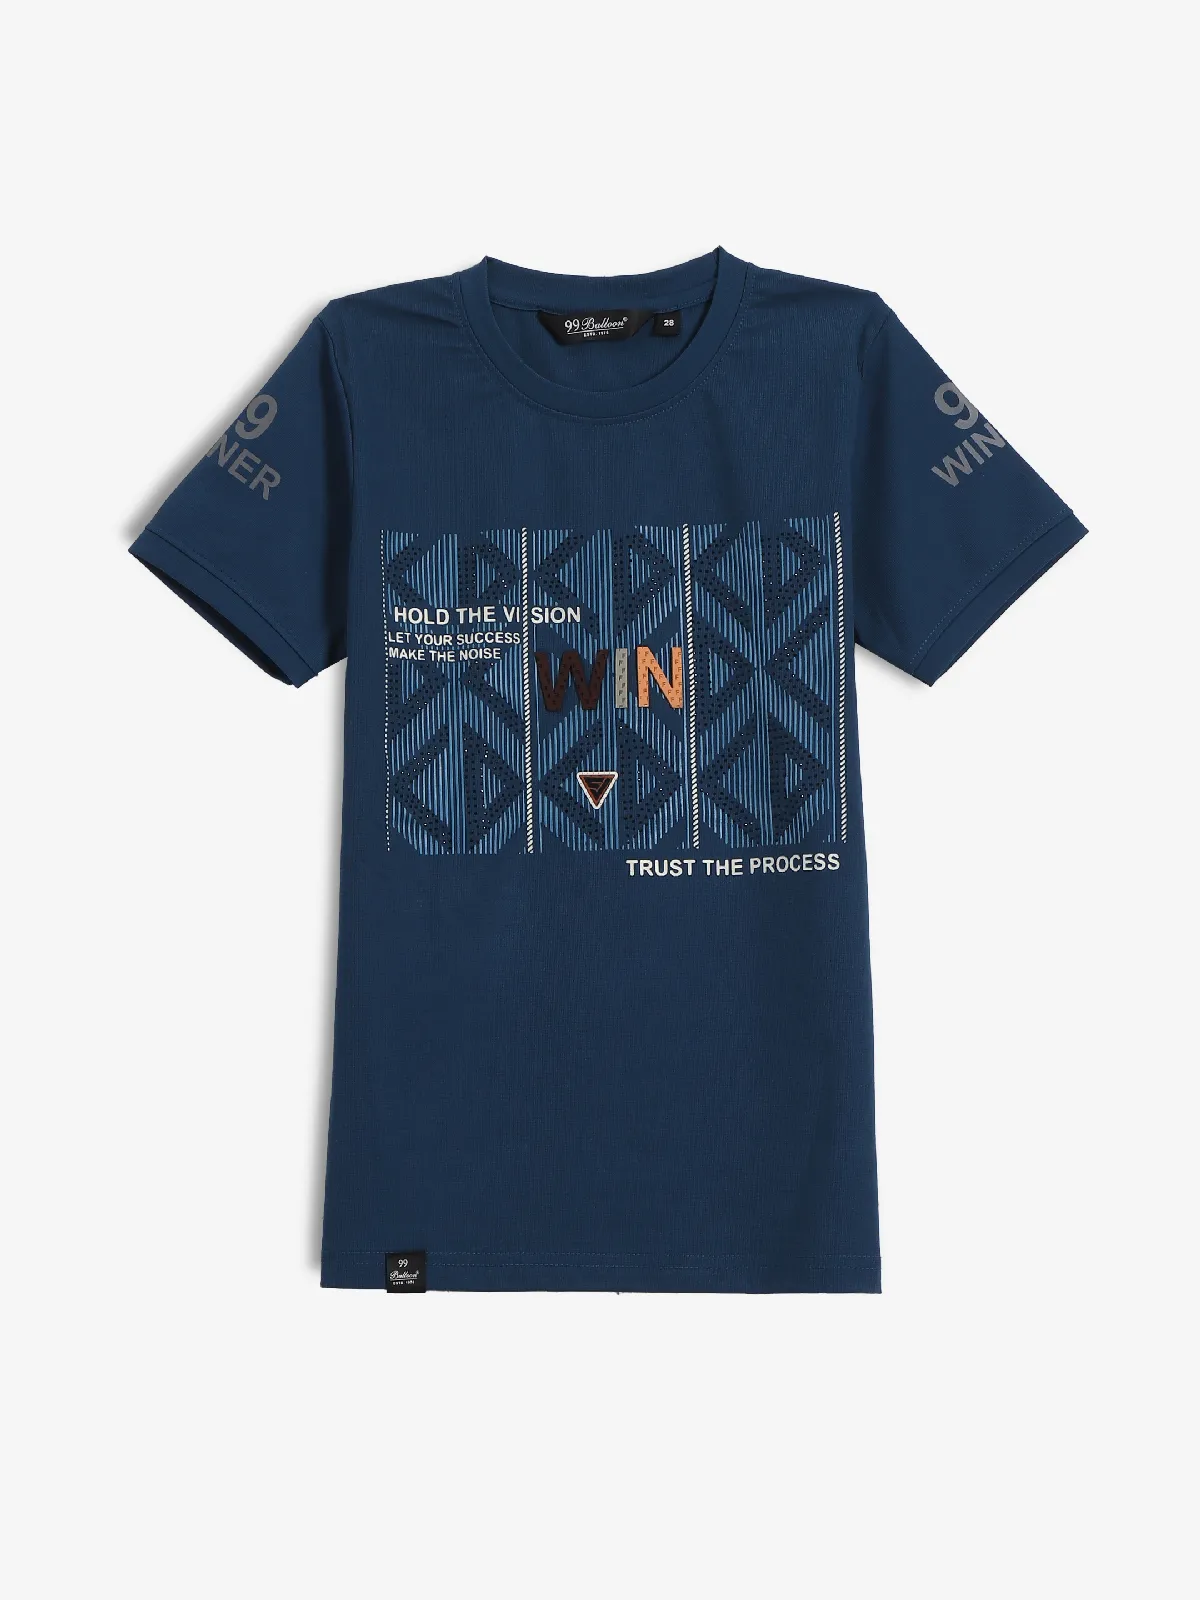 99 BALLOON blue cotton t-shirt